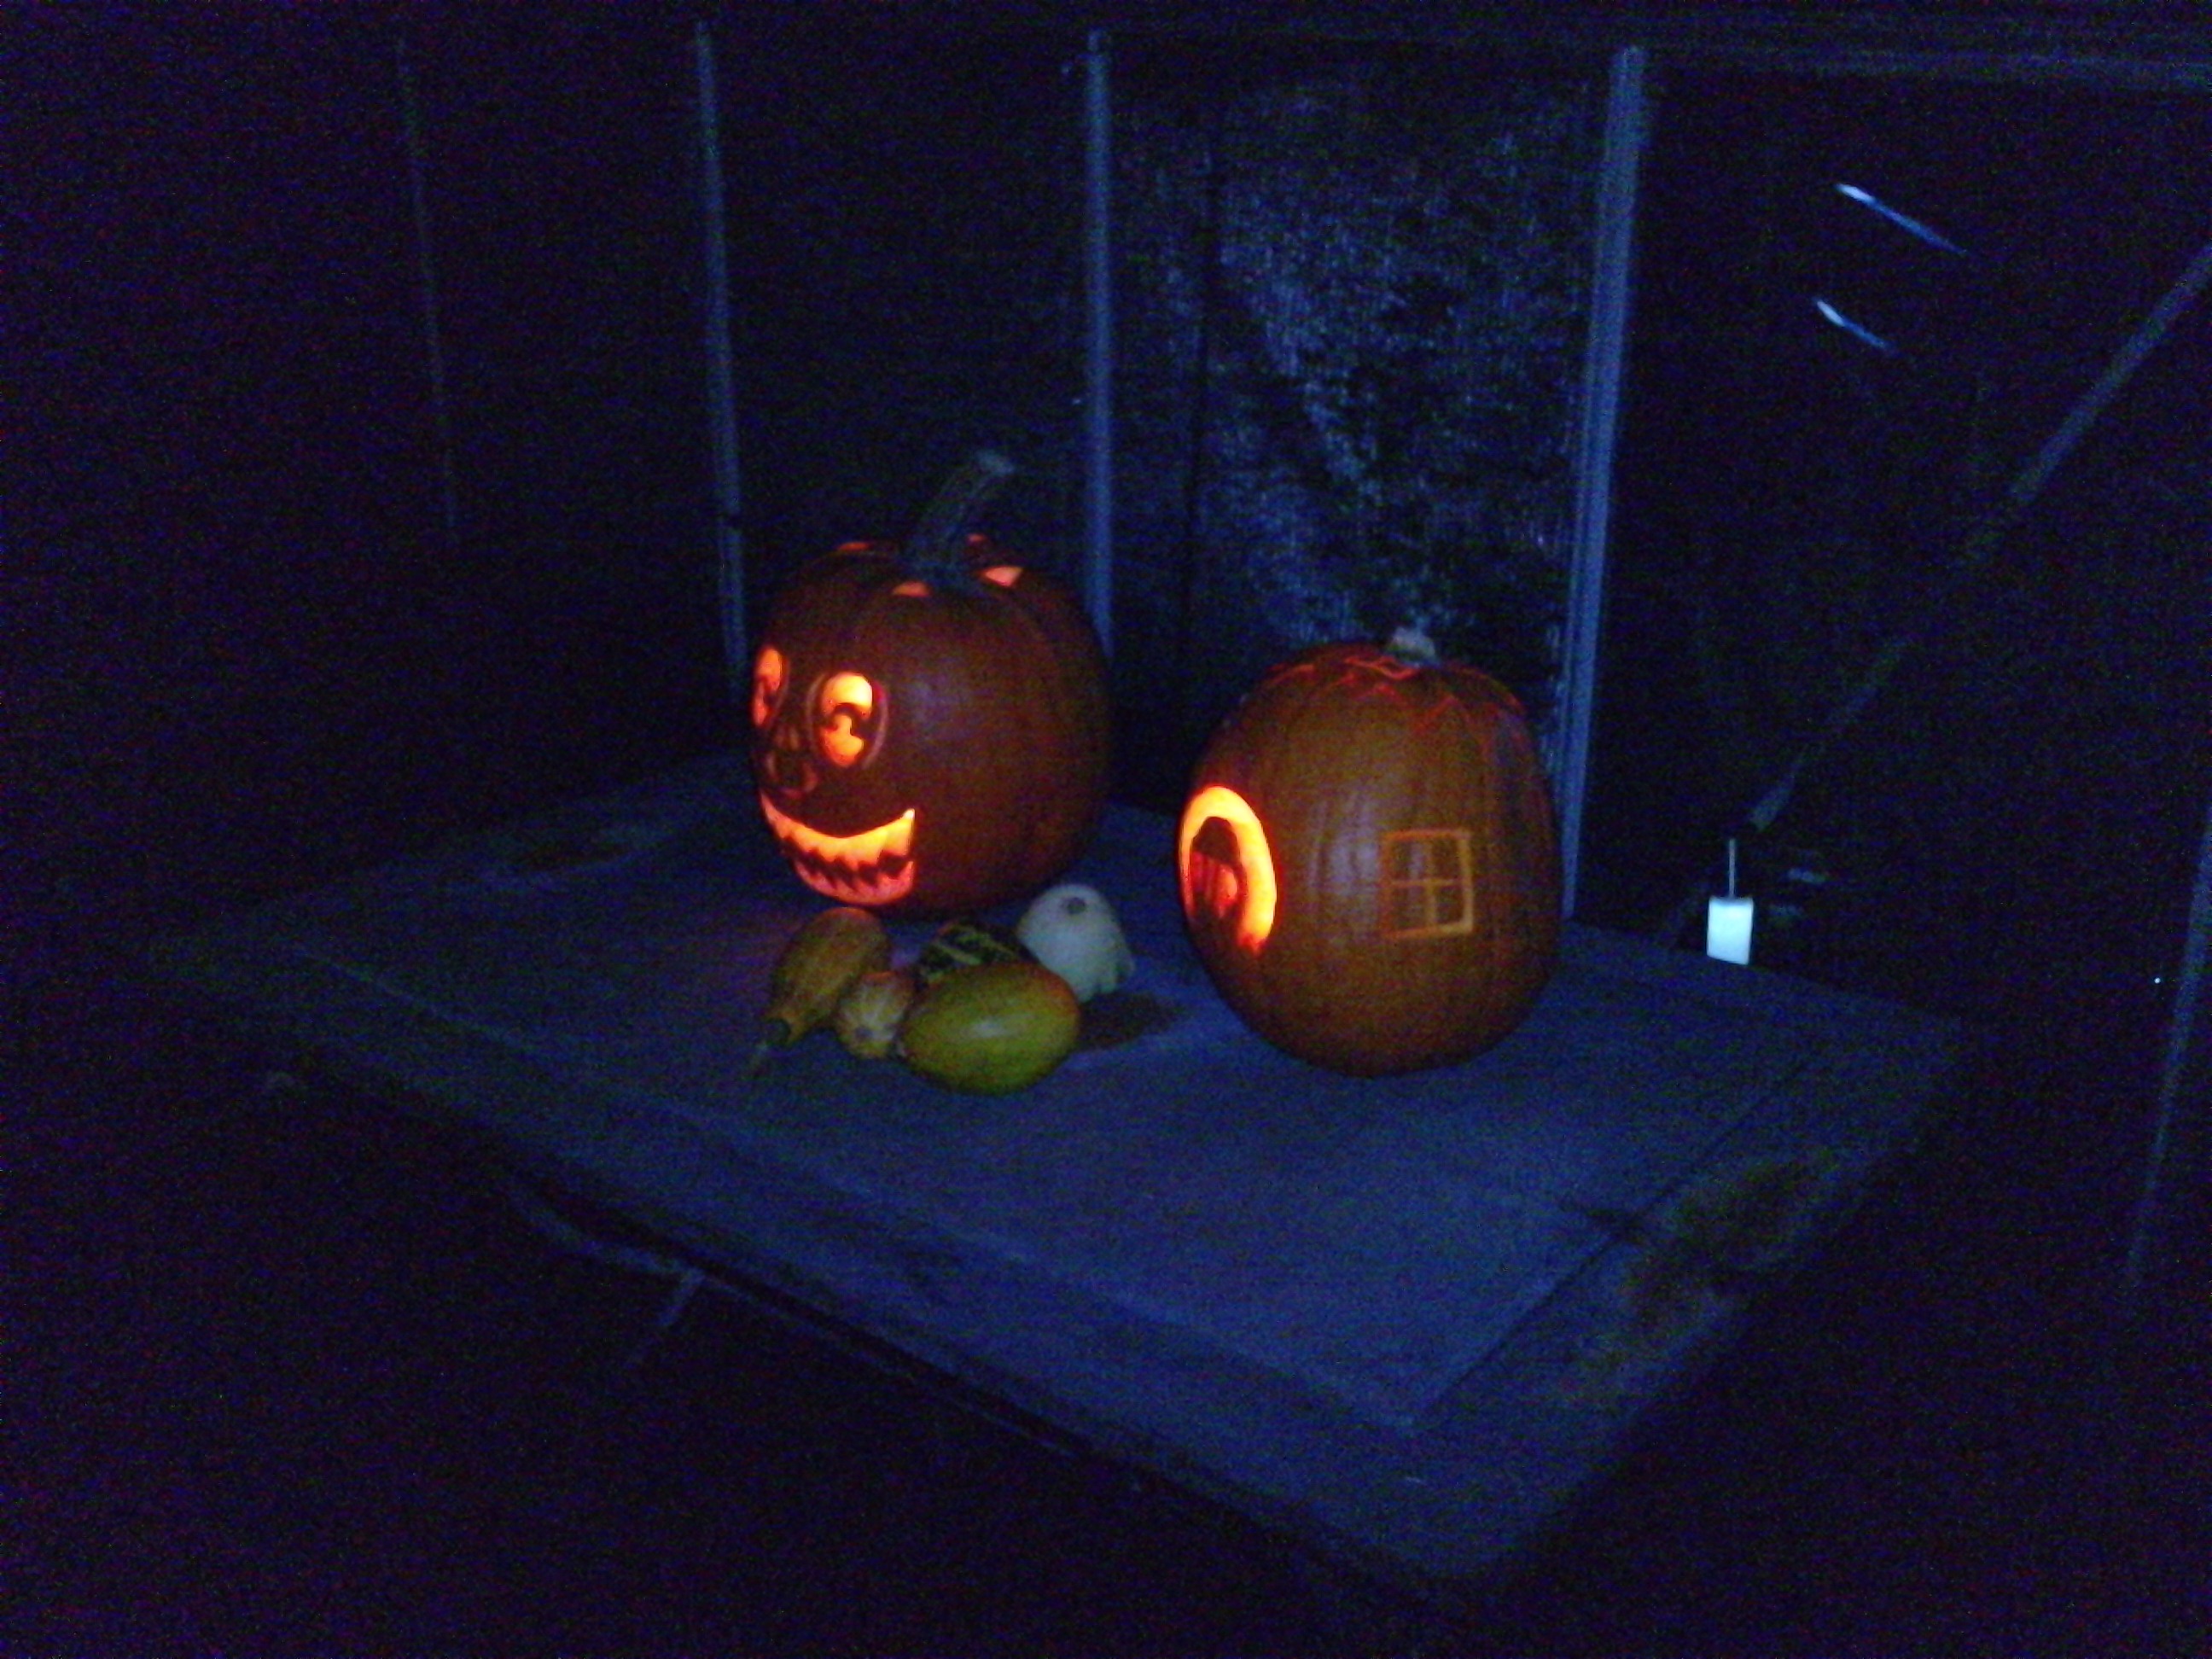 www.assensvej.dk/gfx/Halloween4.JPG